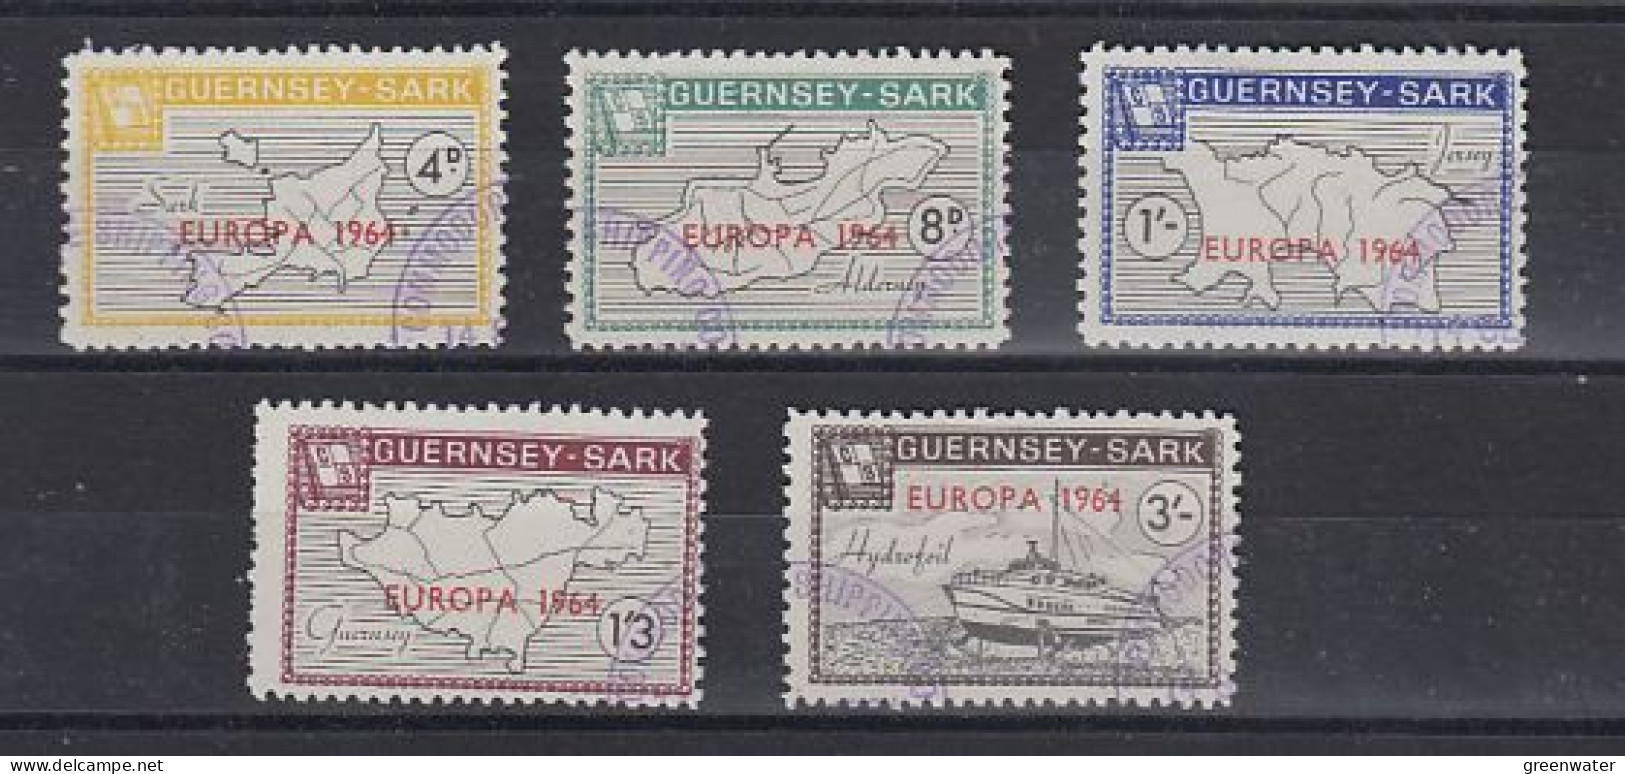 Europa 1964 Guernsey-Sark British Locals 5v Used (59238) - 1964